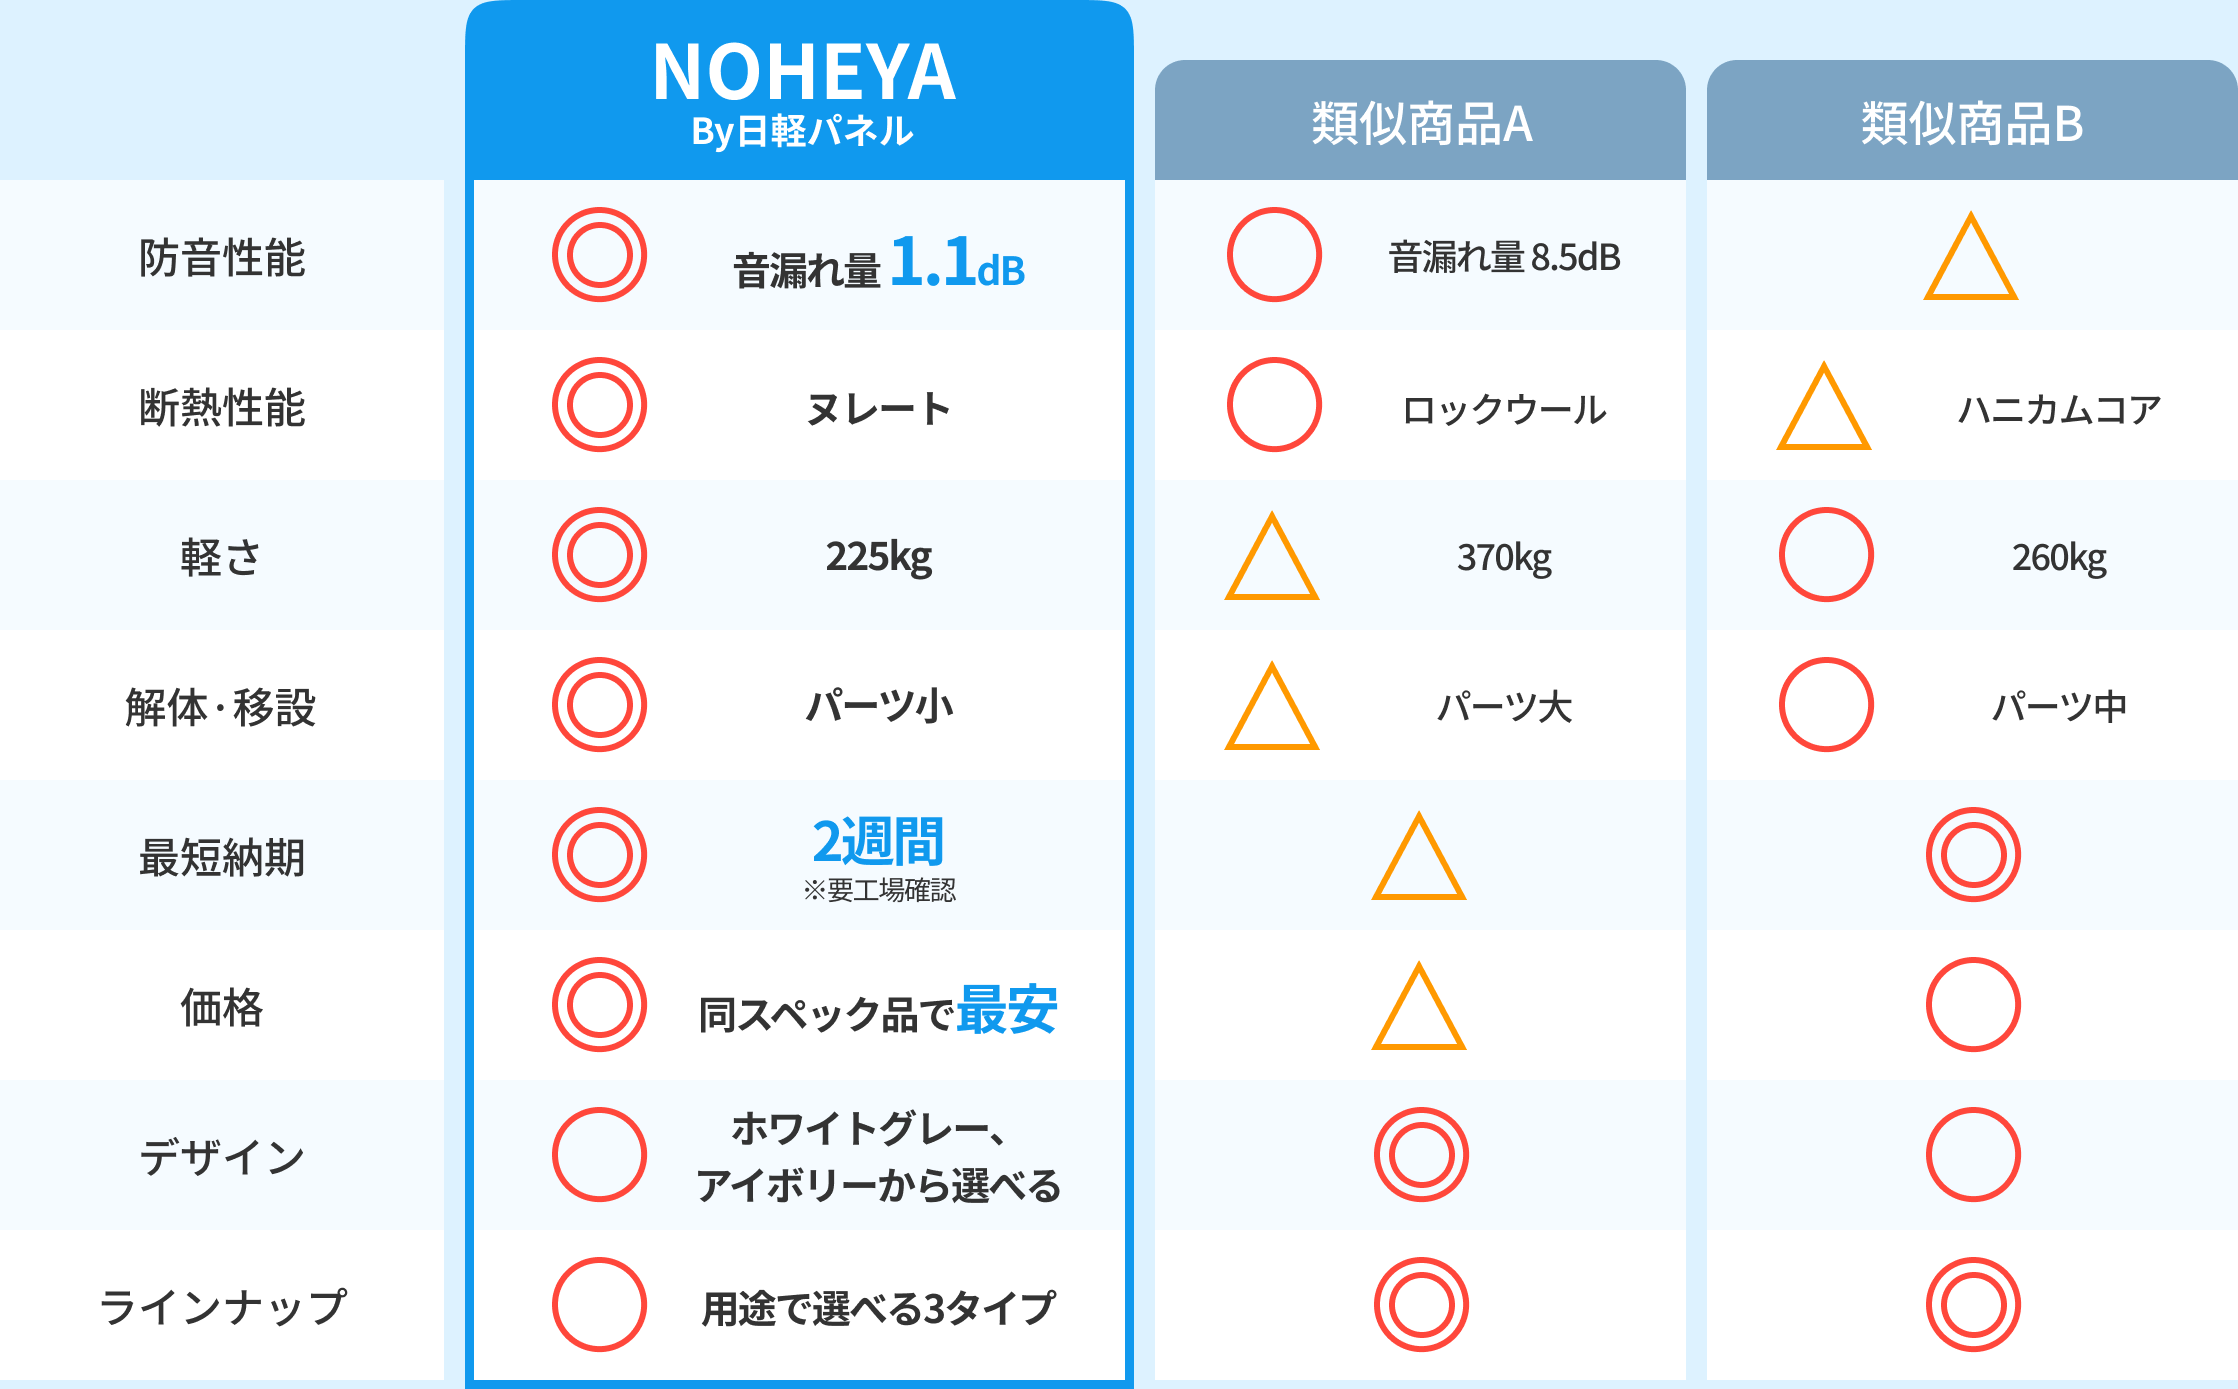 NOHEYAと他社製品との比較表